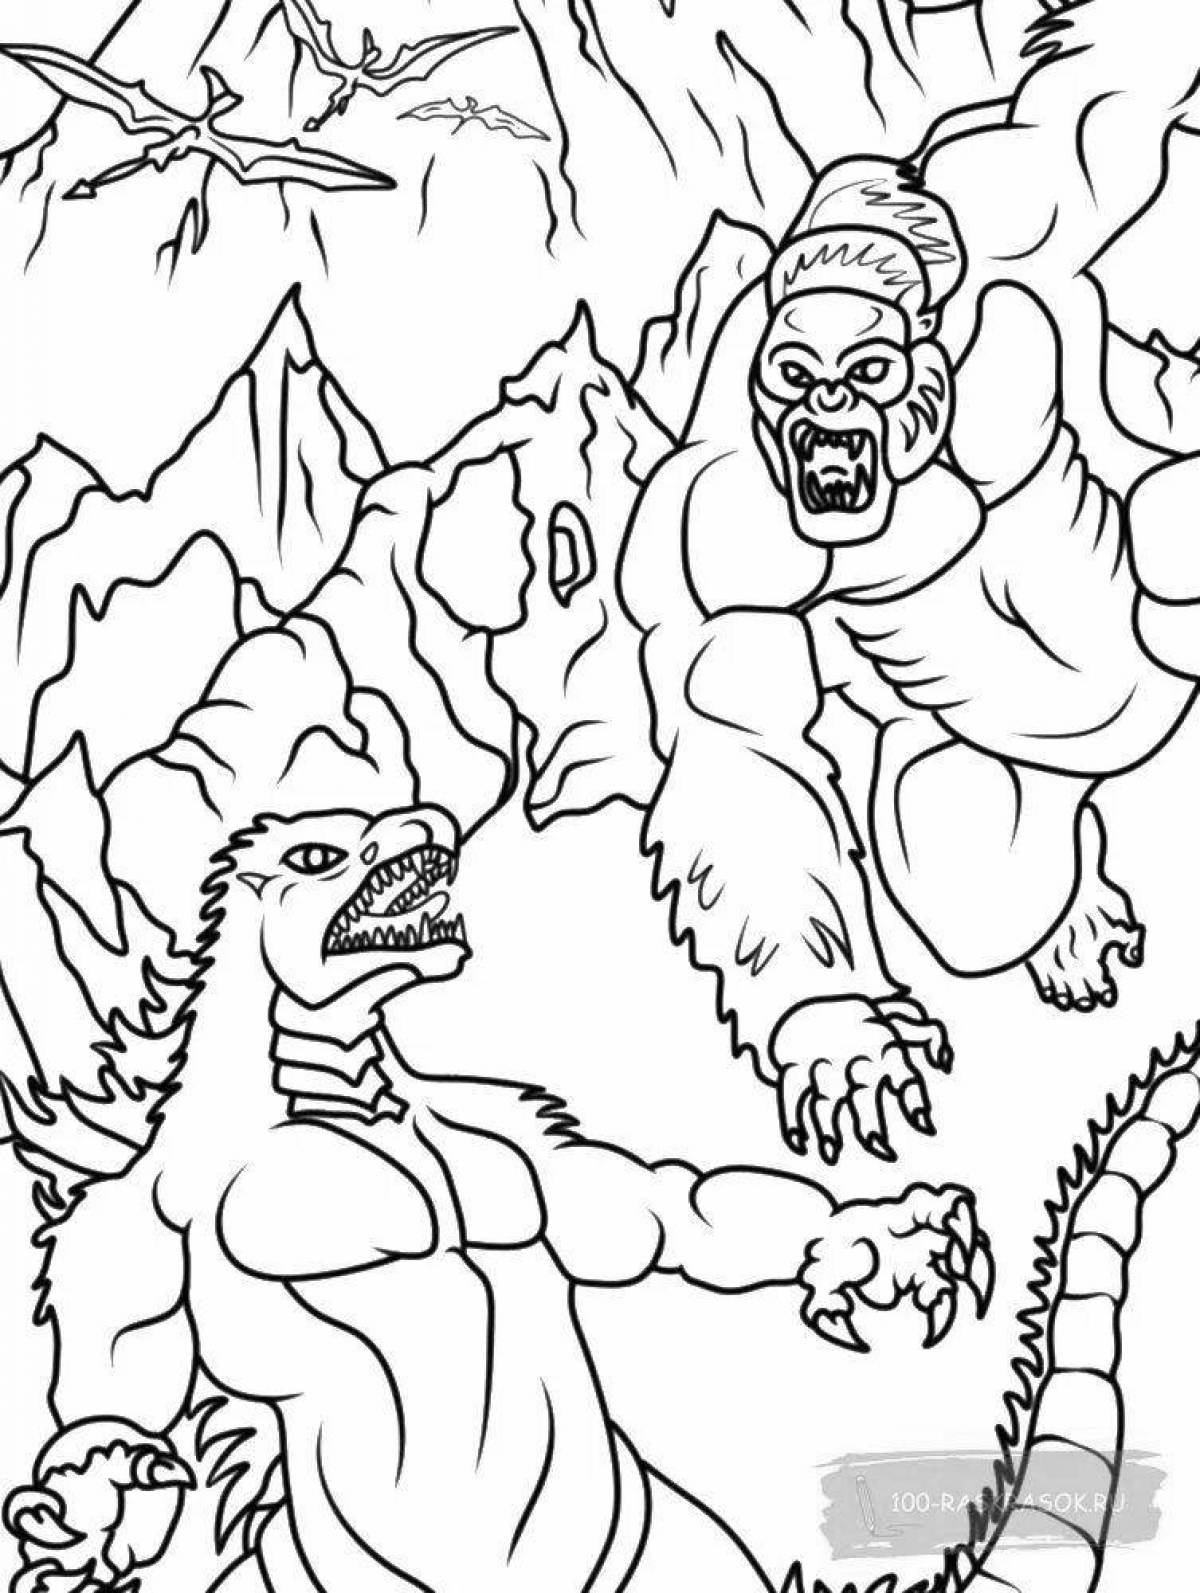 Godzilla vs Kong #2